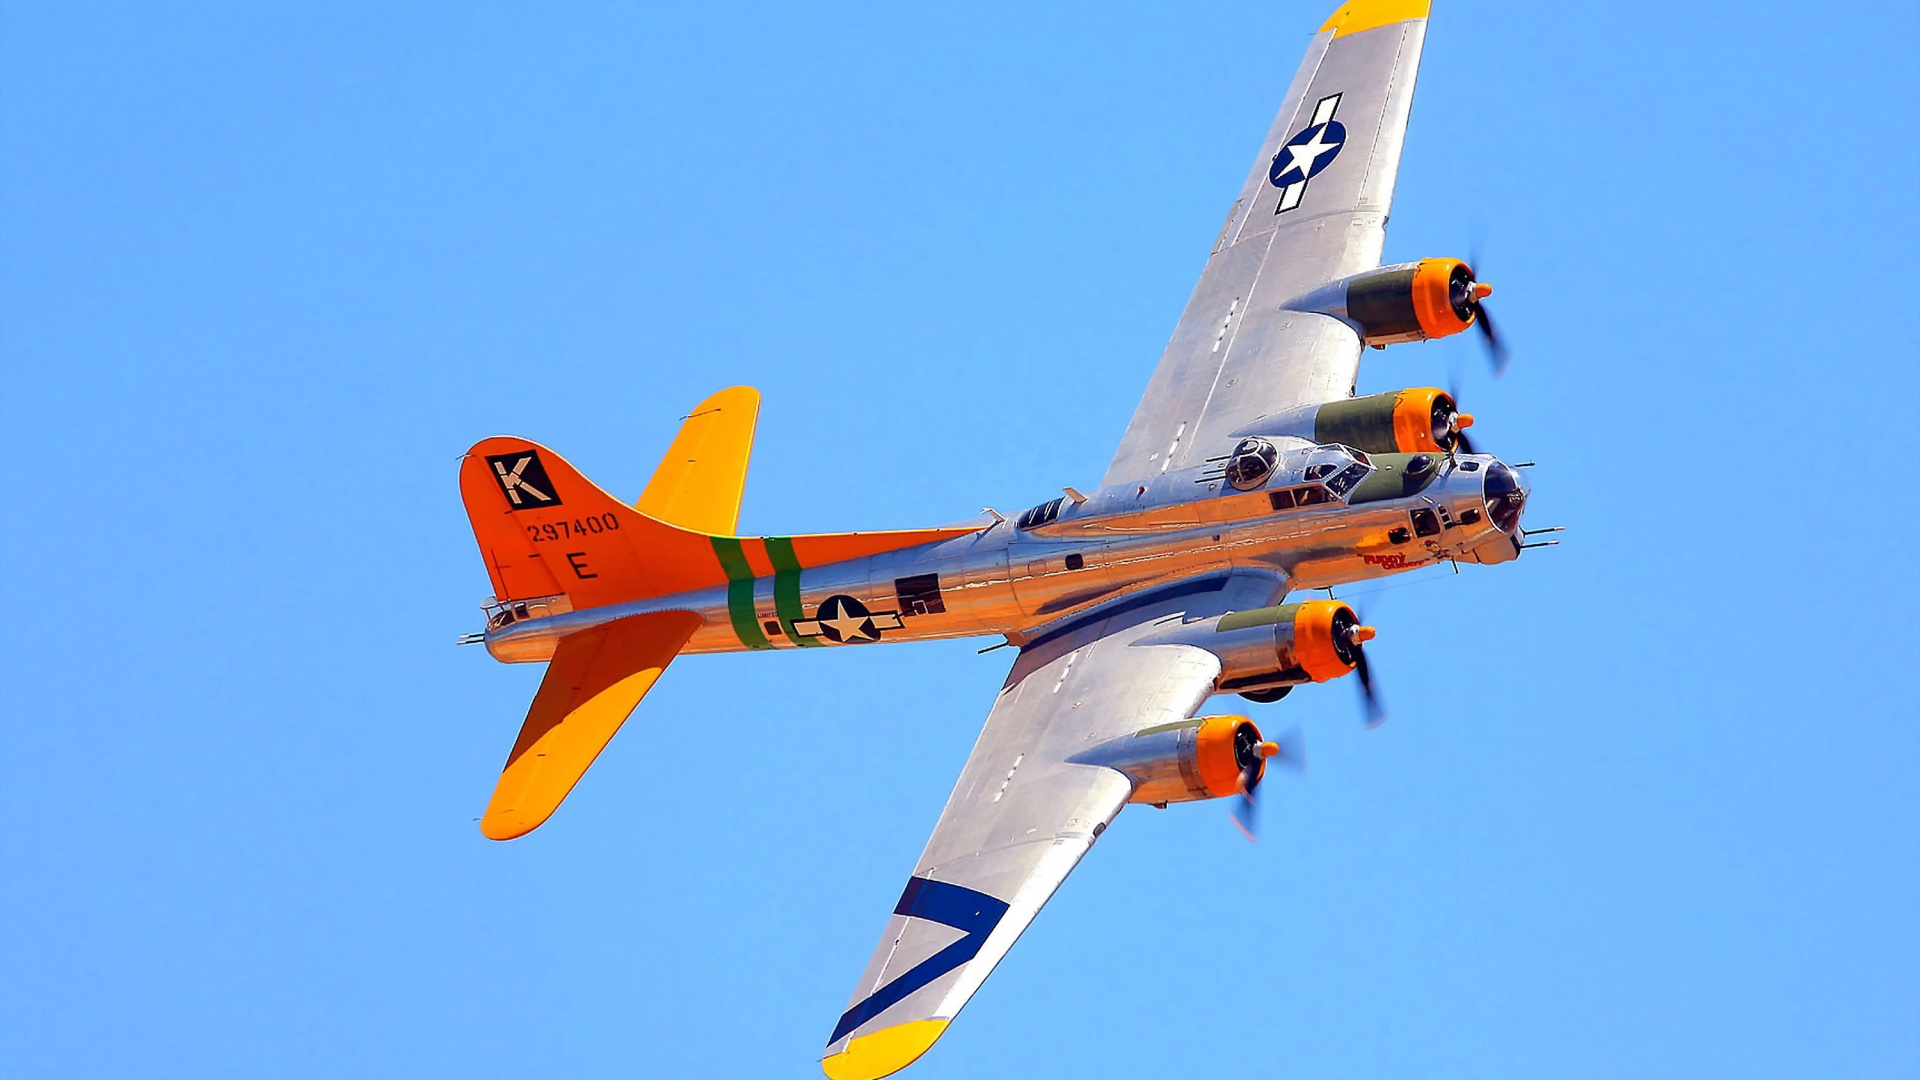 波音公司b-17飞行堡垒, 军用飞机, 航空, 螺旋桨, 航班 壁纸 1920x1080 允许